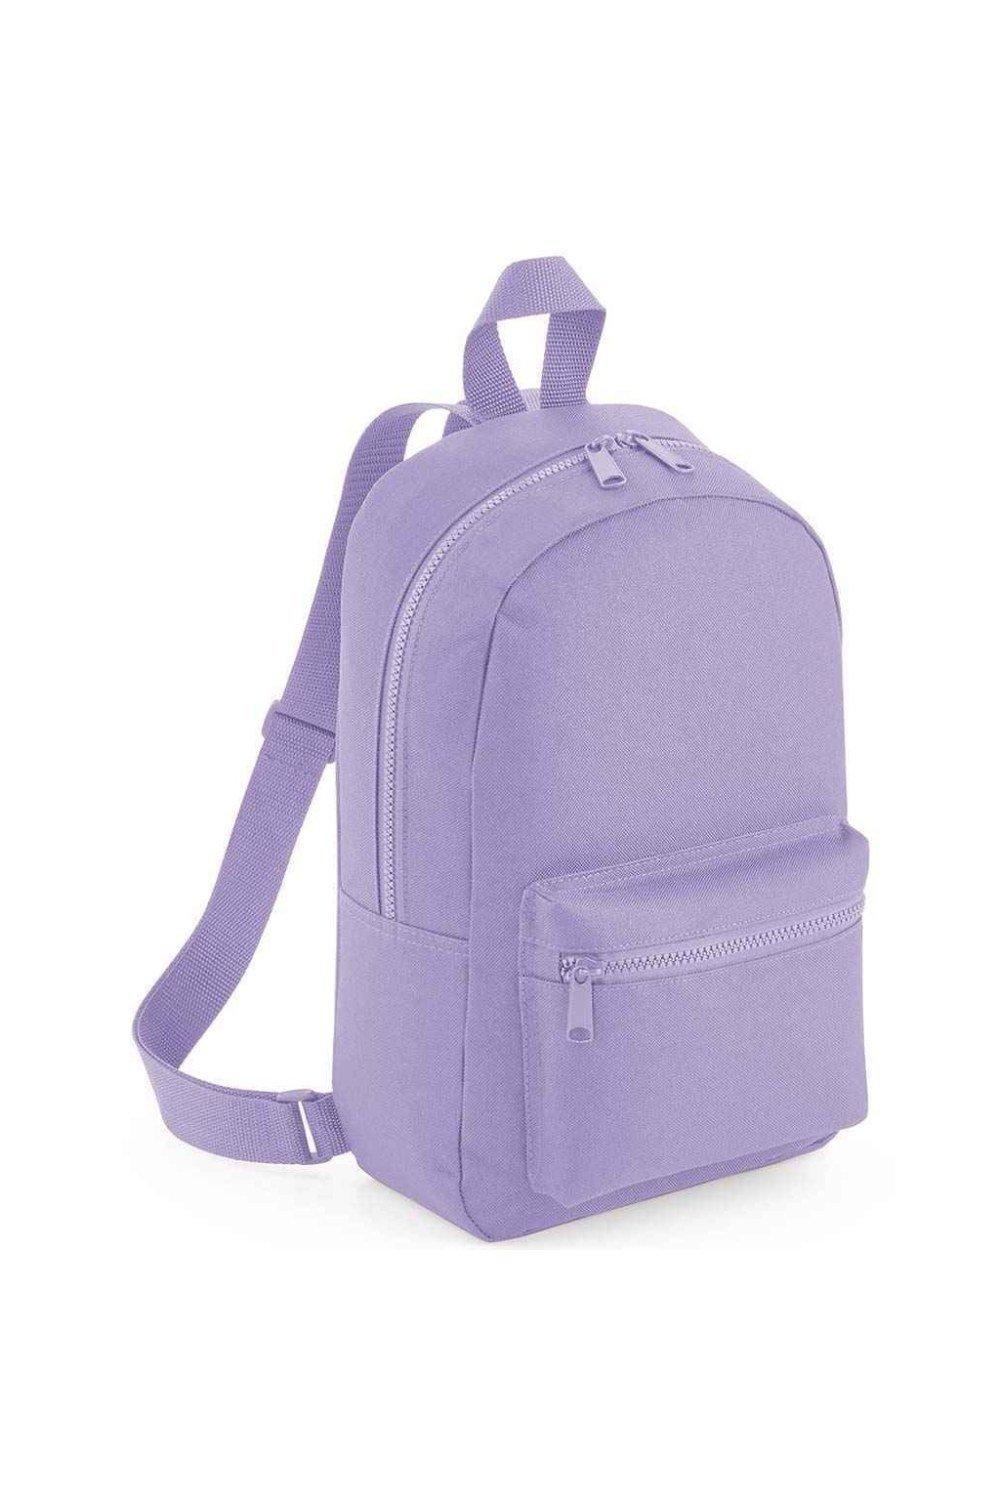 Мини-рюкзак Essential Fashion Bagbase, фиолетовый емкость idea степ 1 7л 16х10х14см прямоугольная пластик